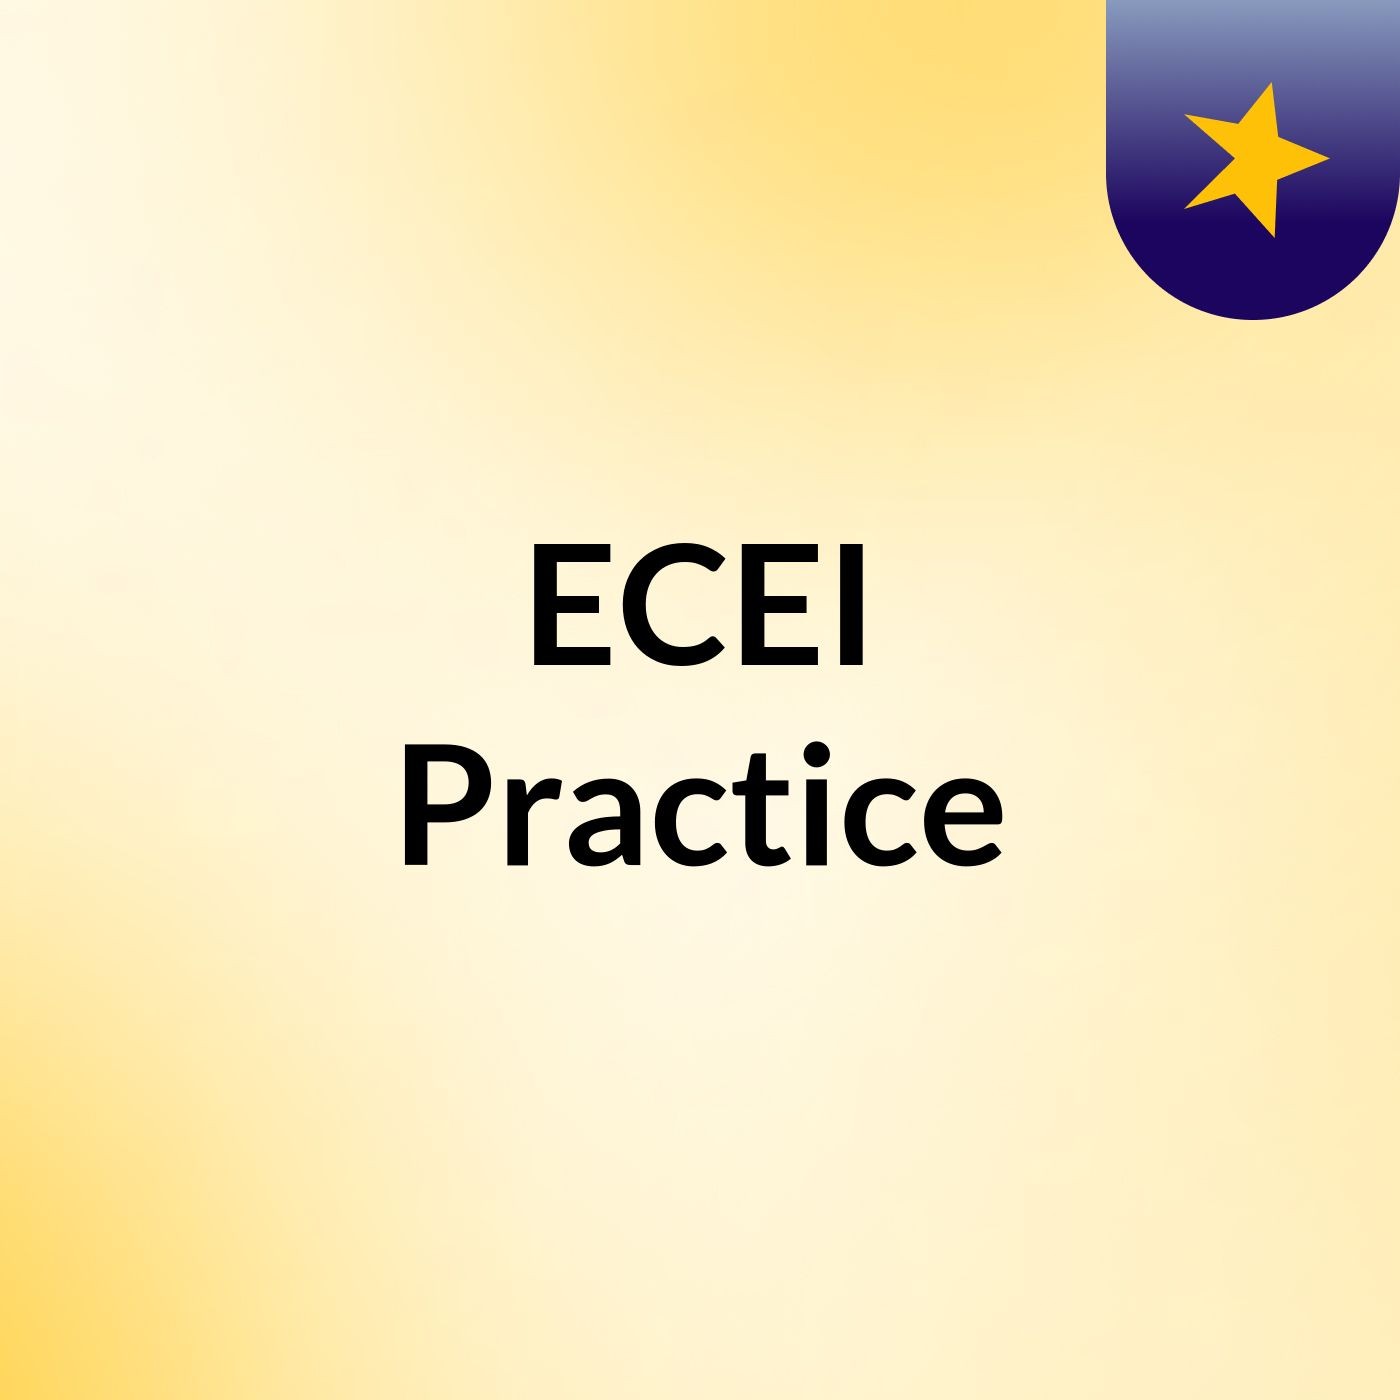 ECEI Practice